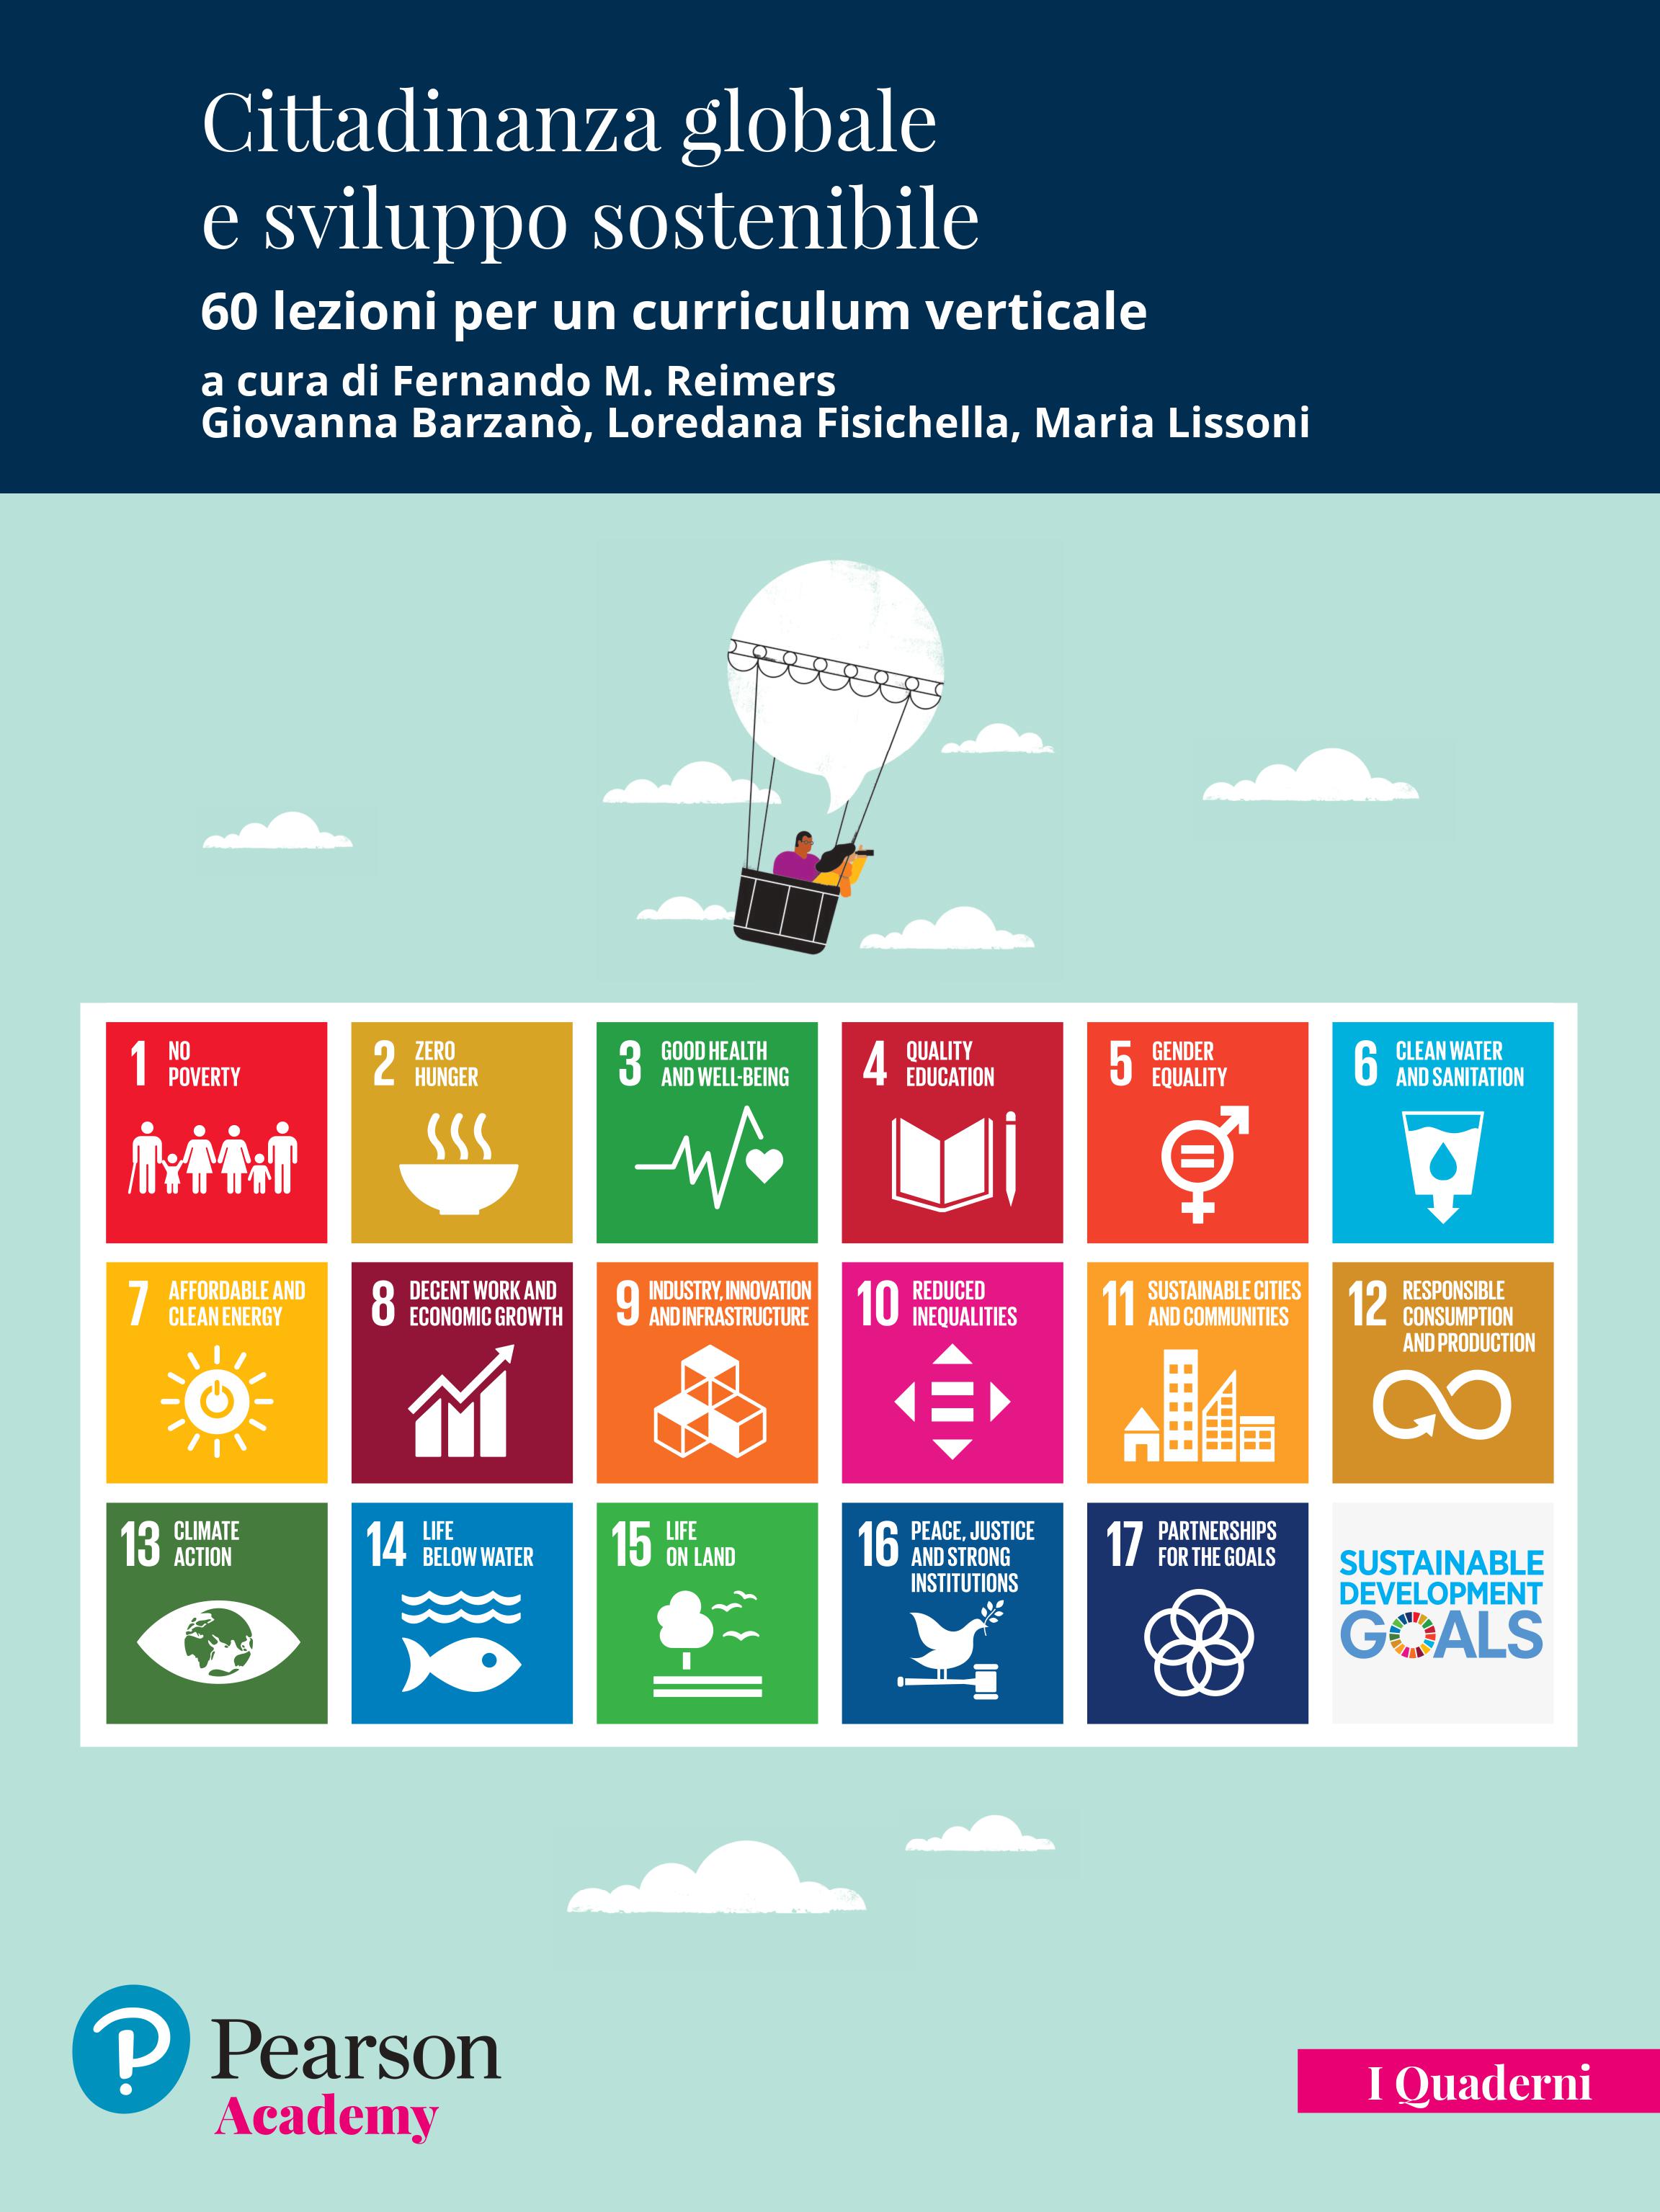 Pubblicato il volume “Cittadinanza Globale e Sviluppo Sostenibile” per le edizioni Pearson